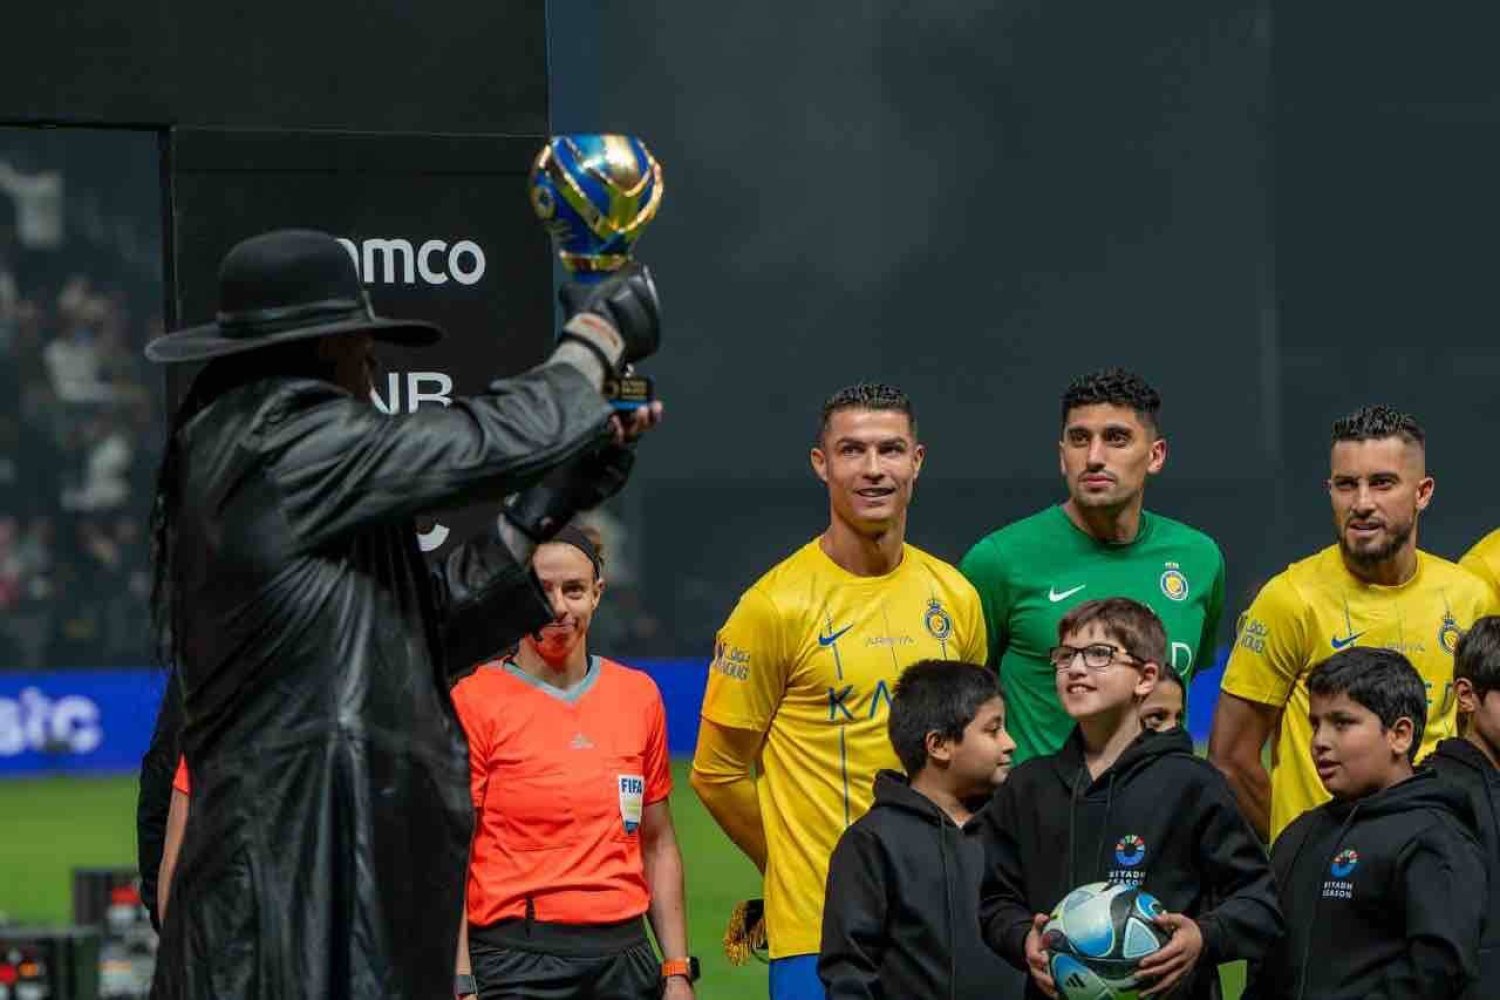 الاندرتيكر اثناء تقديمه لكأس موسم الرياض قبل مباراة النصر والهلال